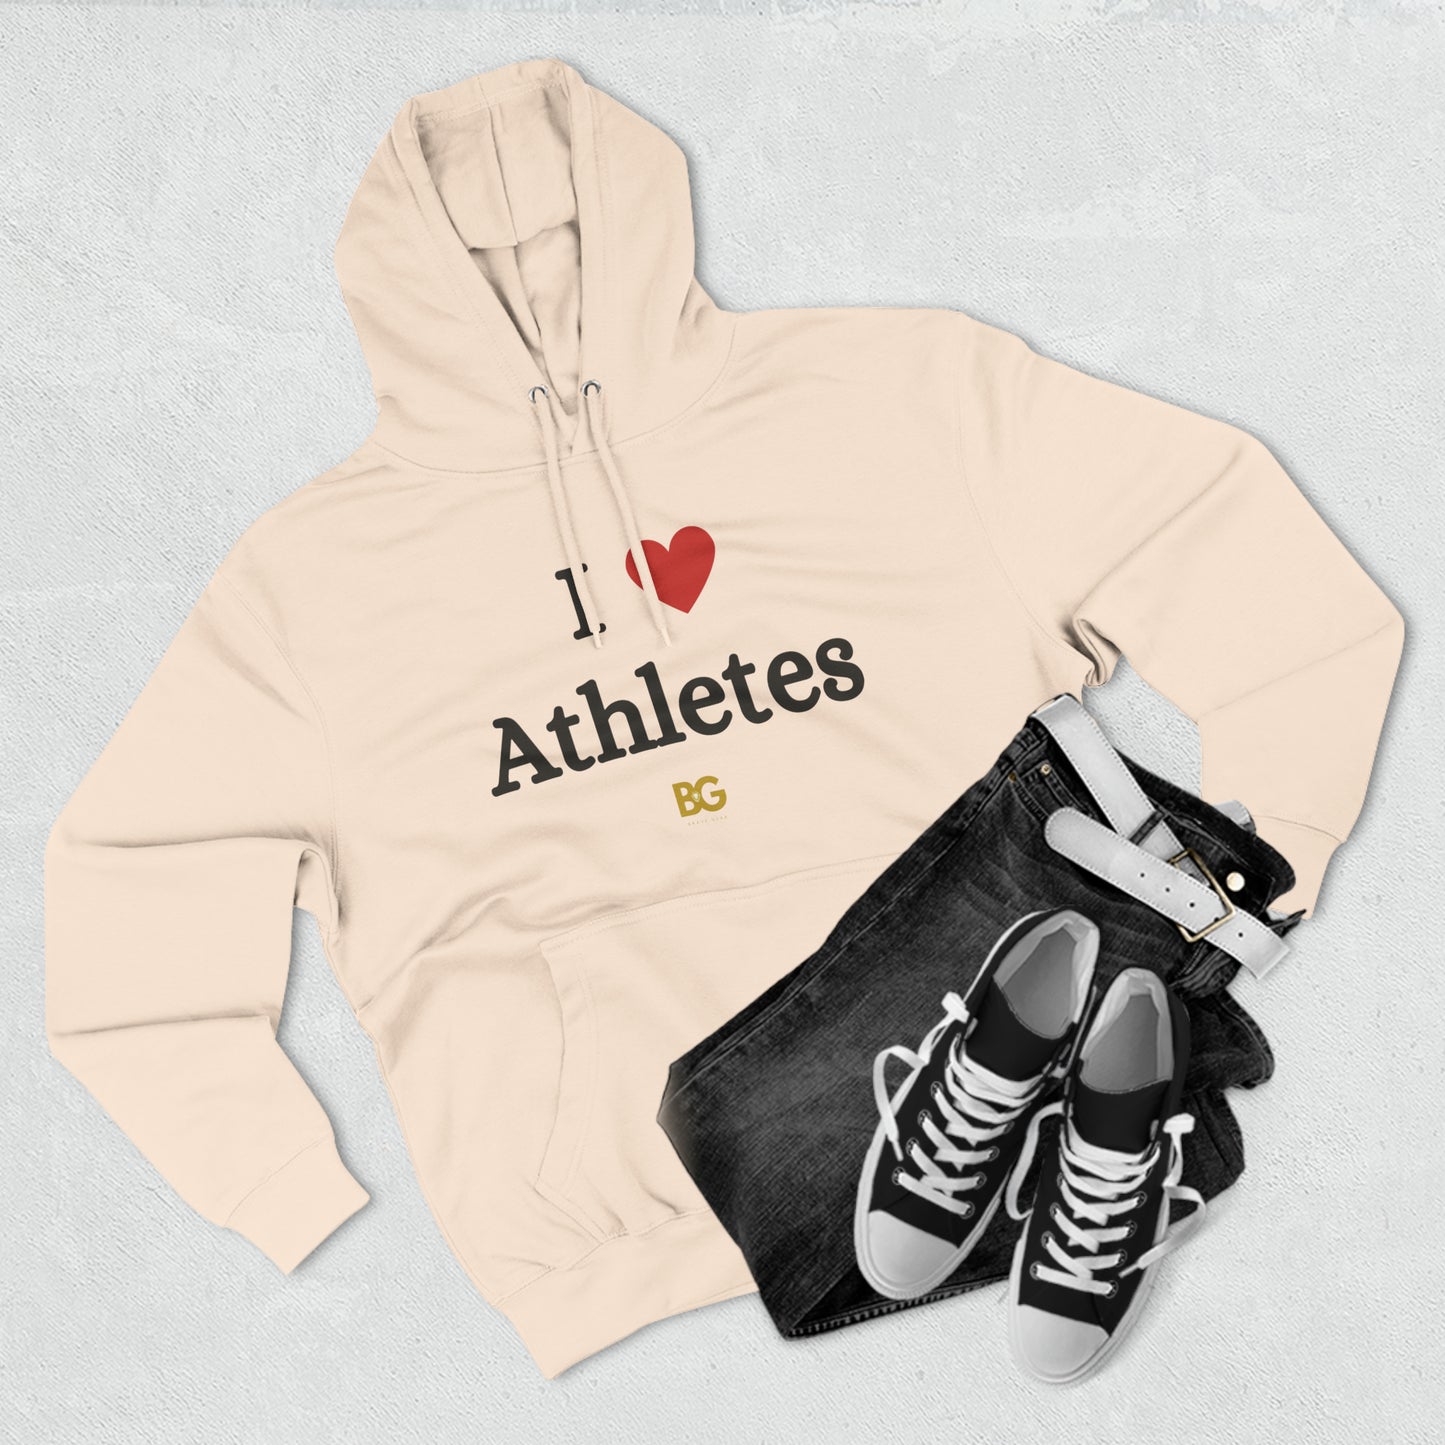 BG "I ❤️ Athletes" Premium Pullover Hoodie